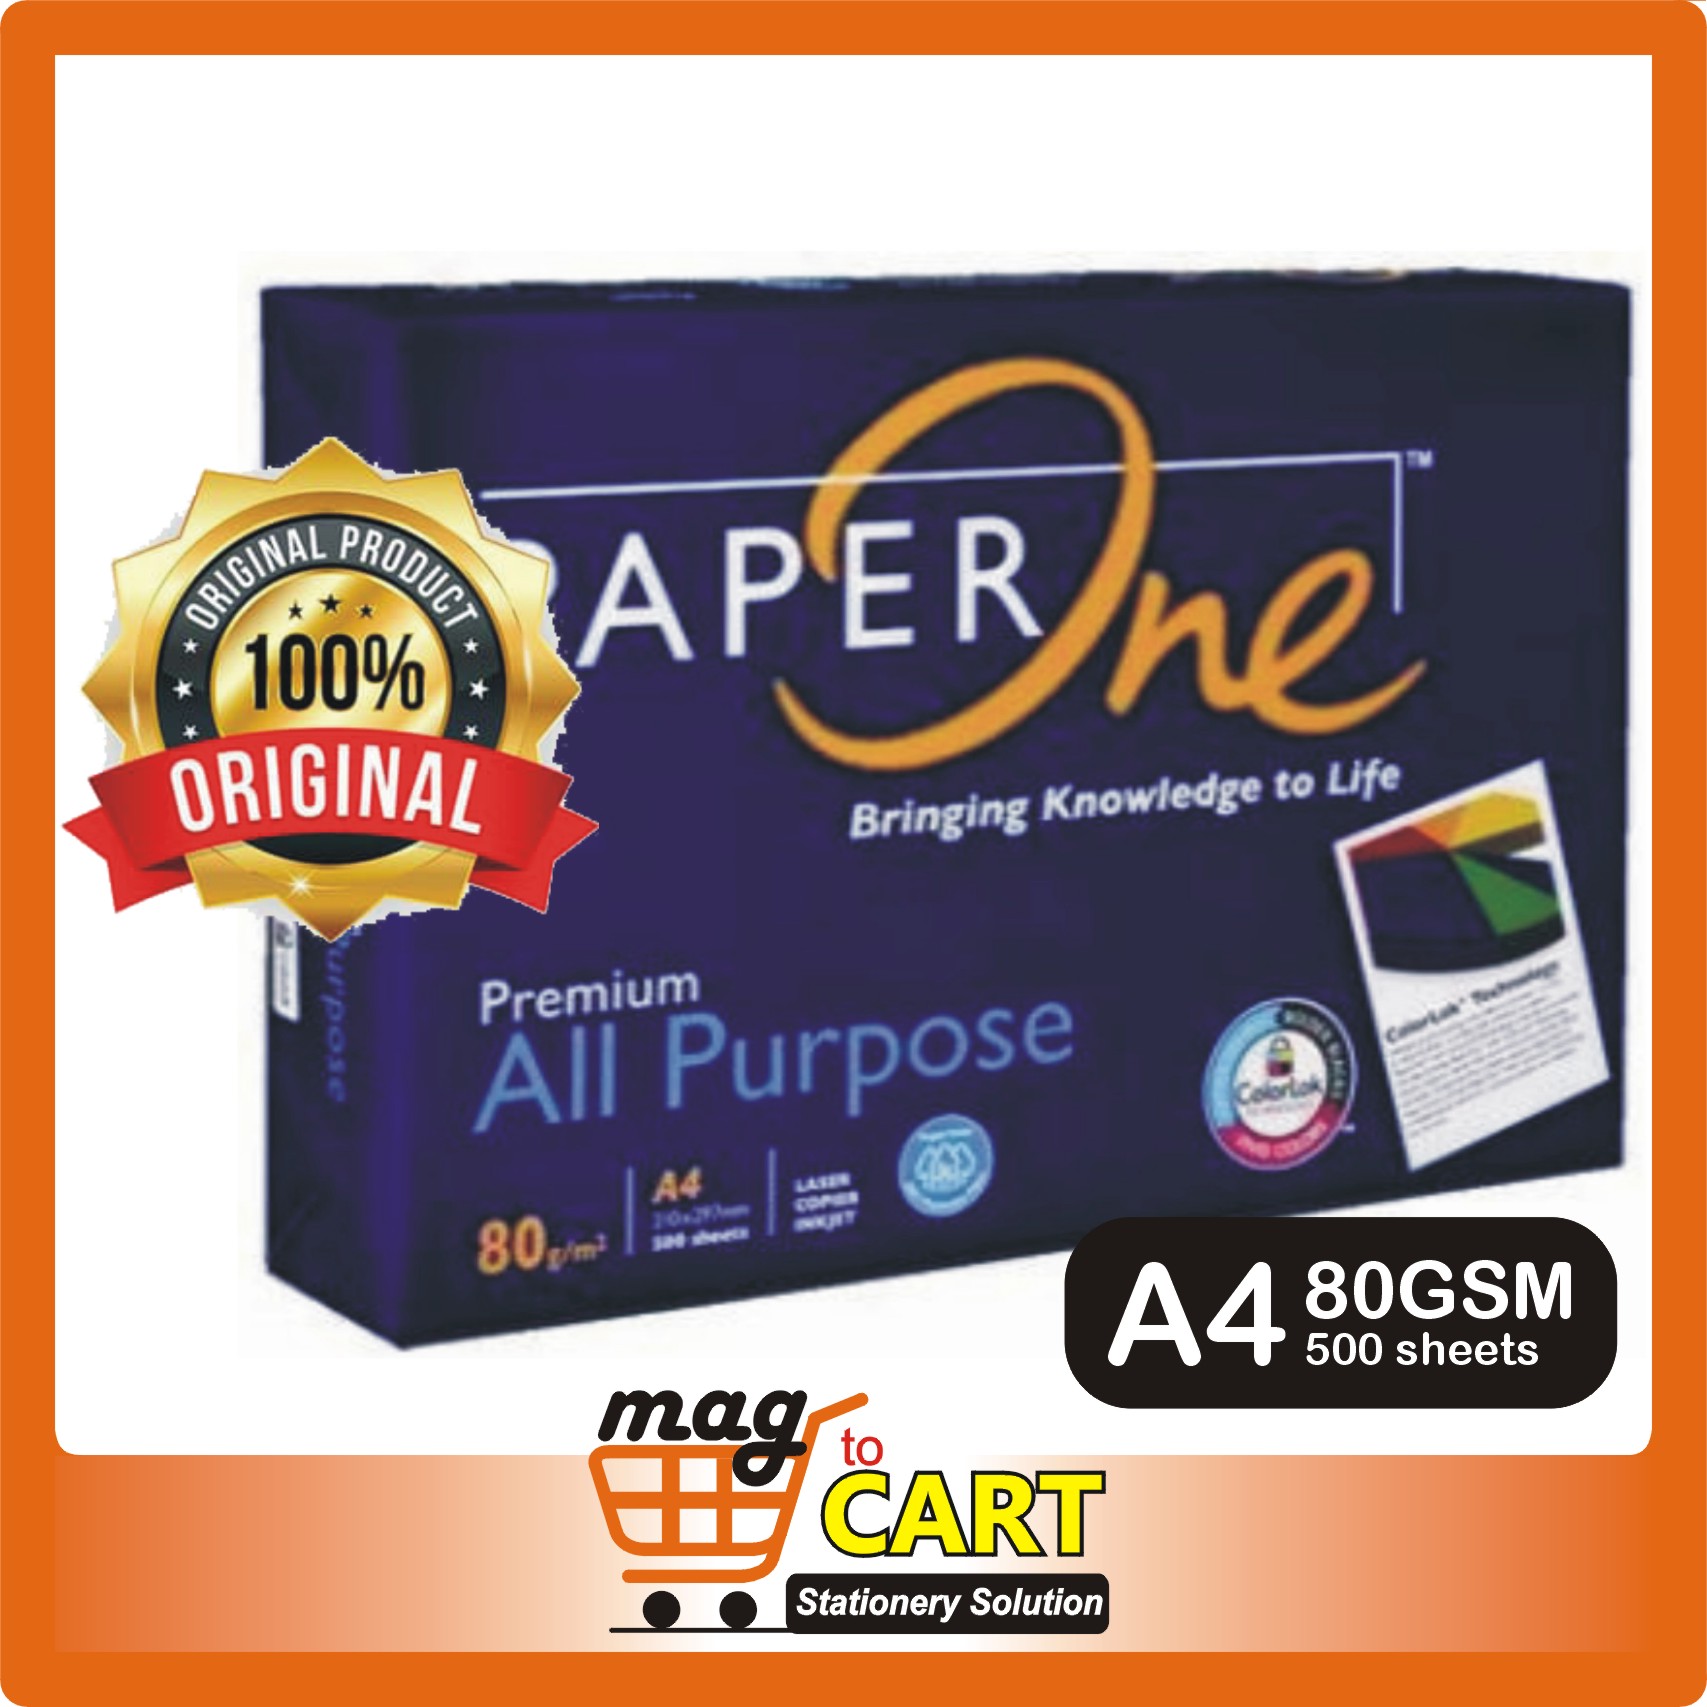 Paper One Paper Asia Kraft Paper Paper One Paper